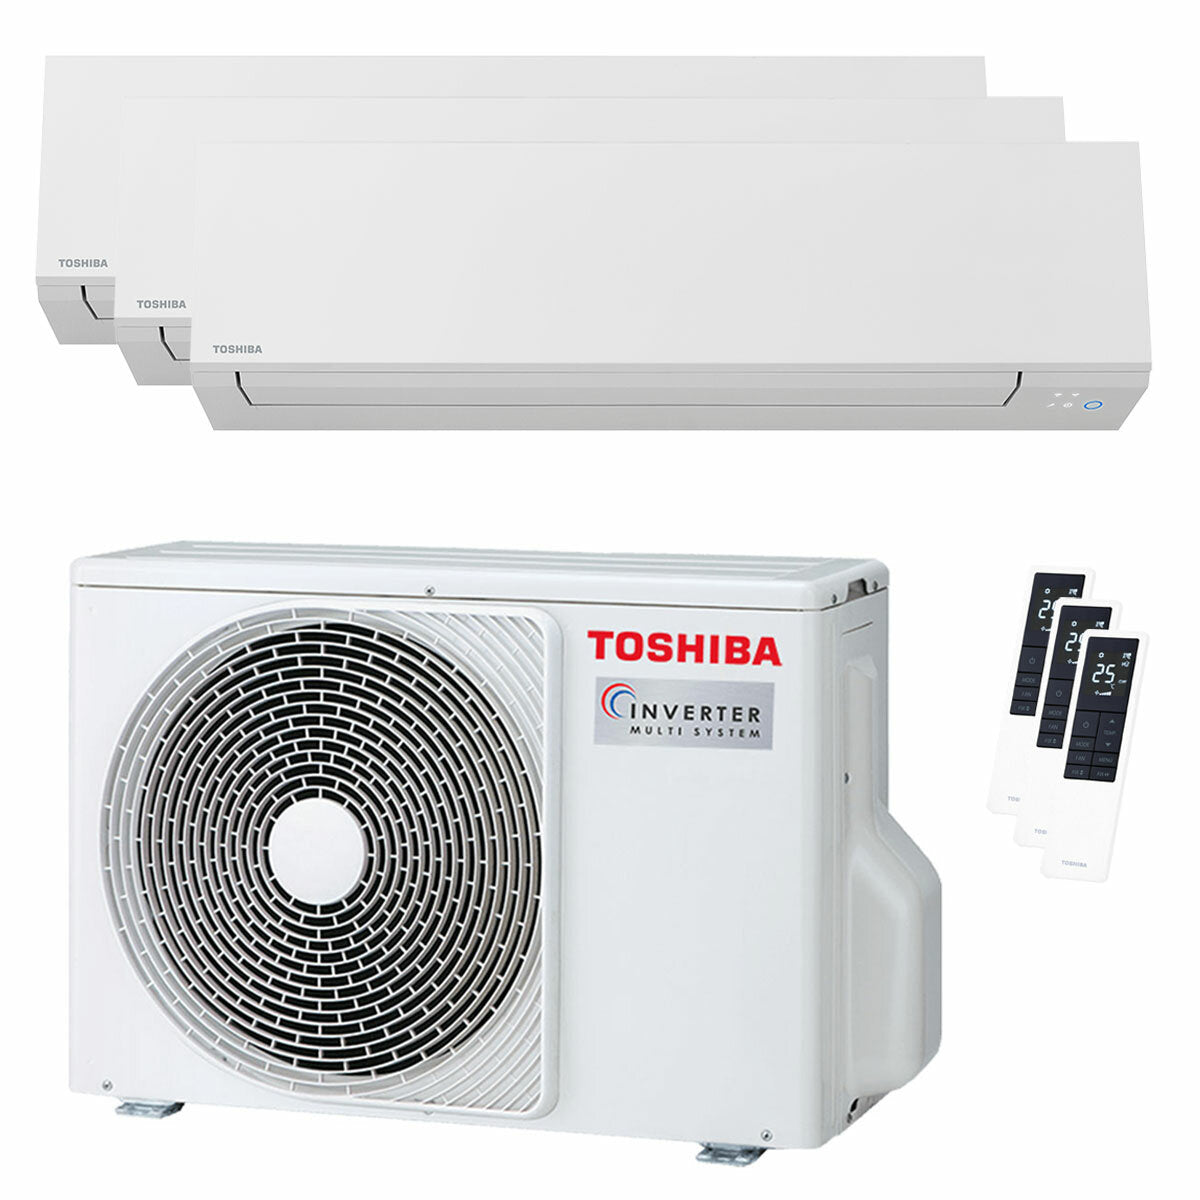 Climatiseur trial split Toshiba SHORAI Edge White 7000+9000+16000 BTU inverseur A+++ unité extérieure wifi 5,2 kW 